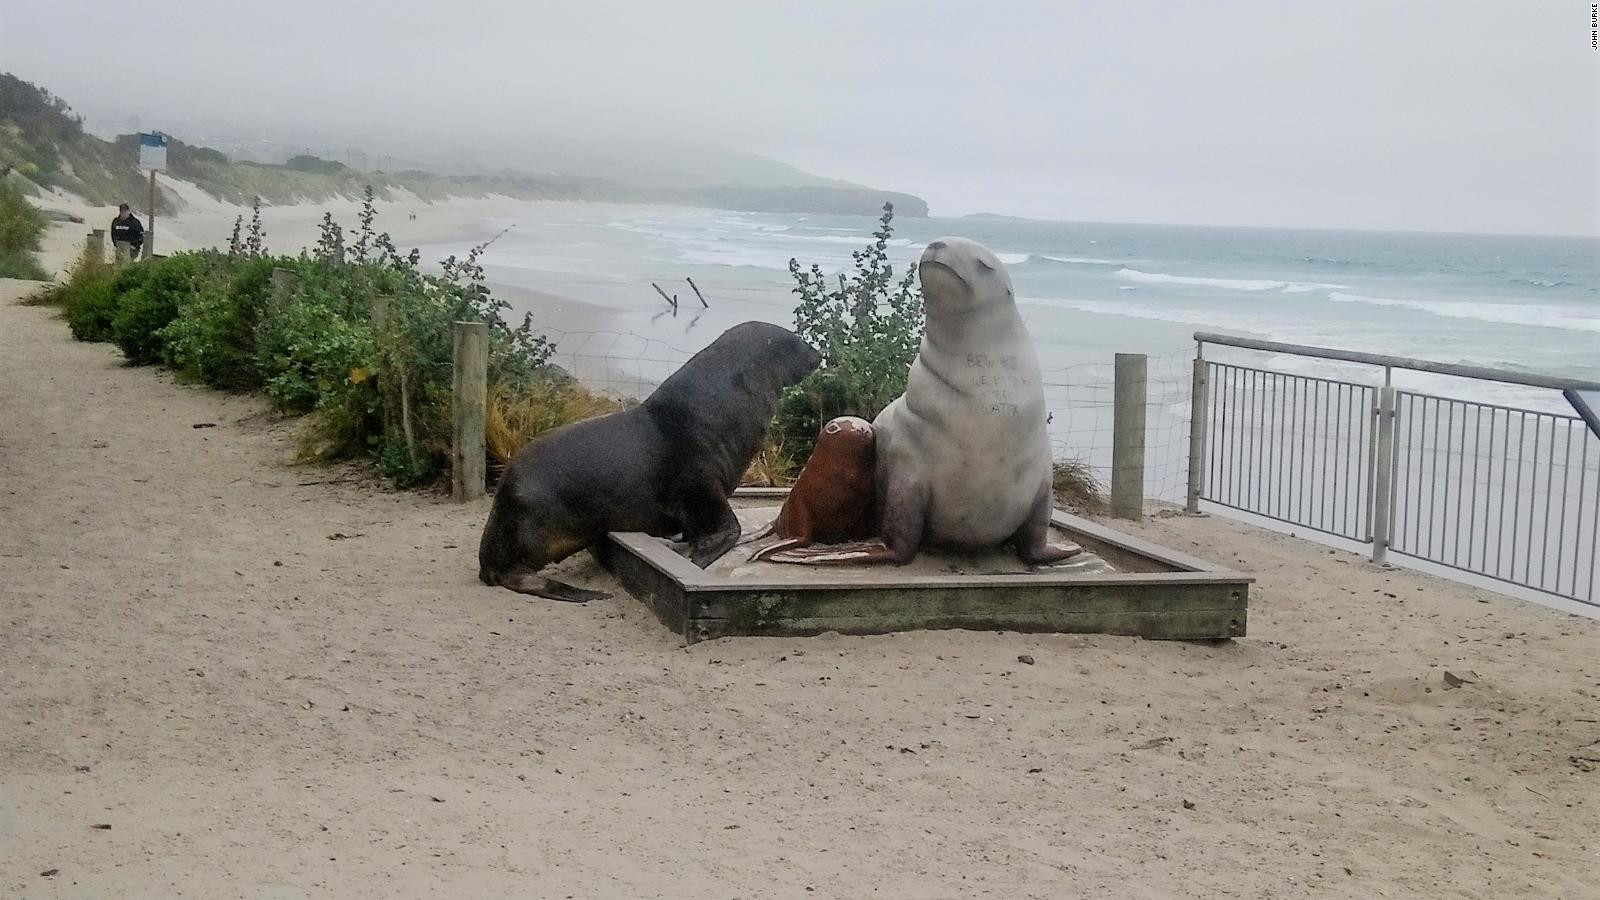 Bức tượng đánh dấu sự trở lại của sư tử biển ở đất liền của New Zealand tại bãi biển St Clair, gần Dunedin, vào đầu những năm 1990. Ảnh: CNN.